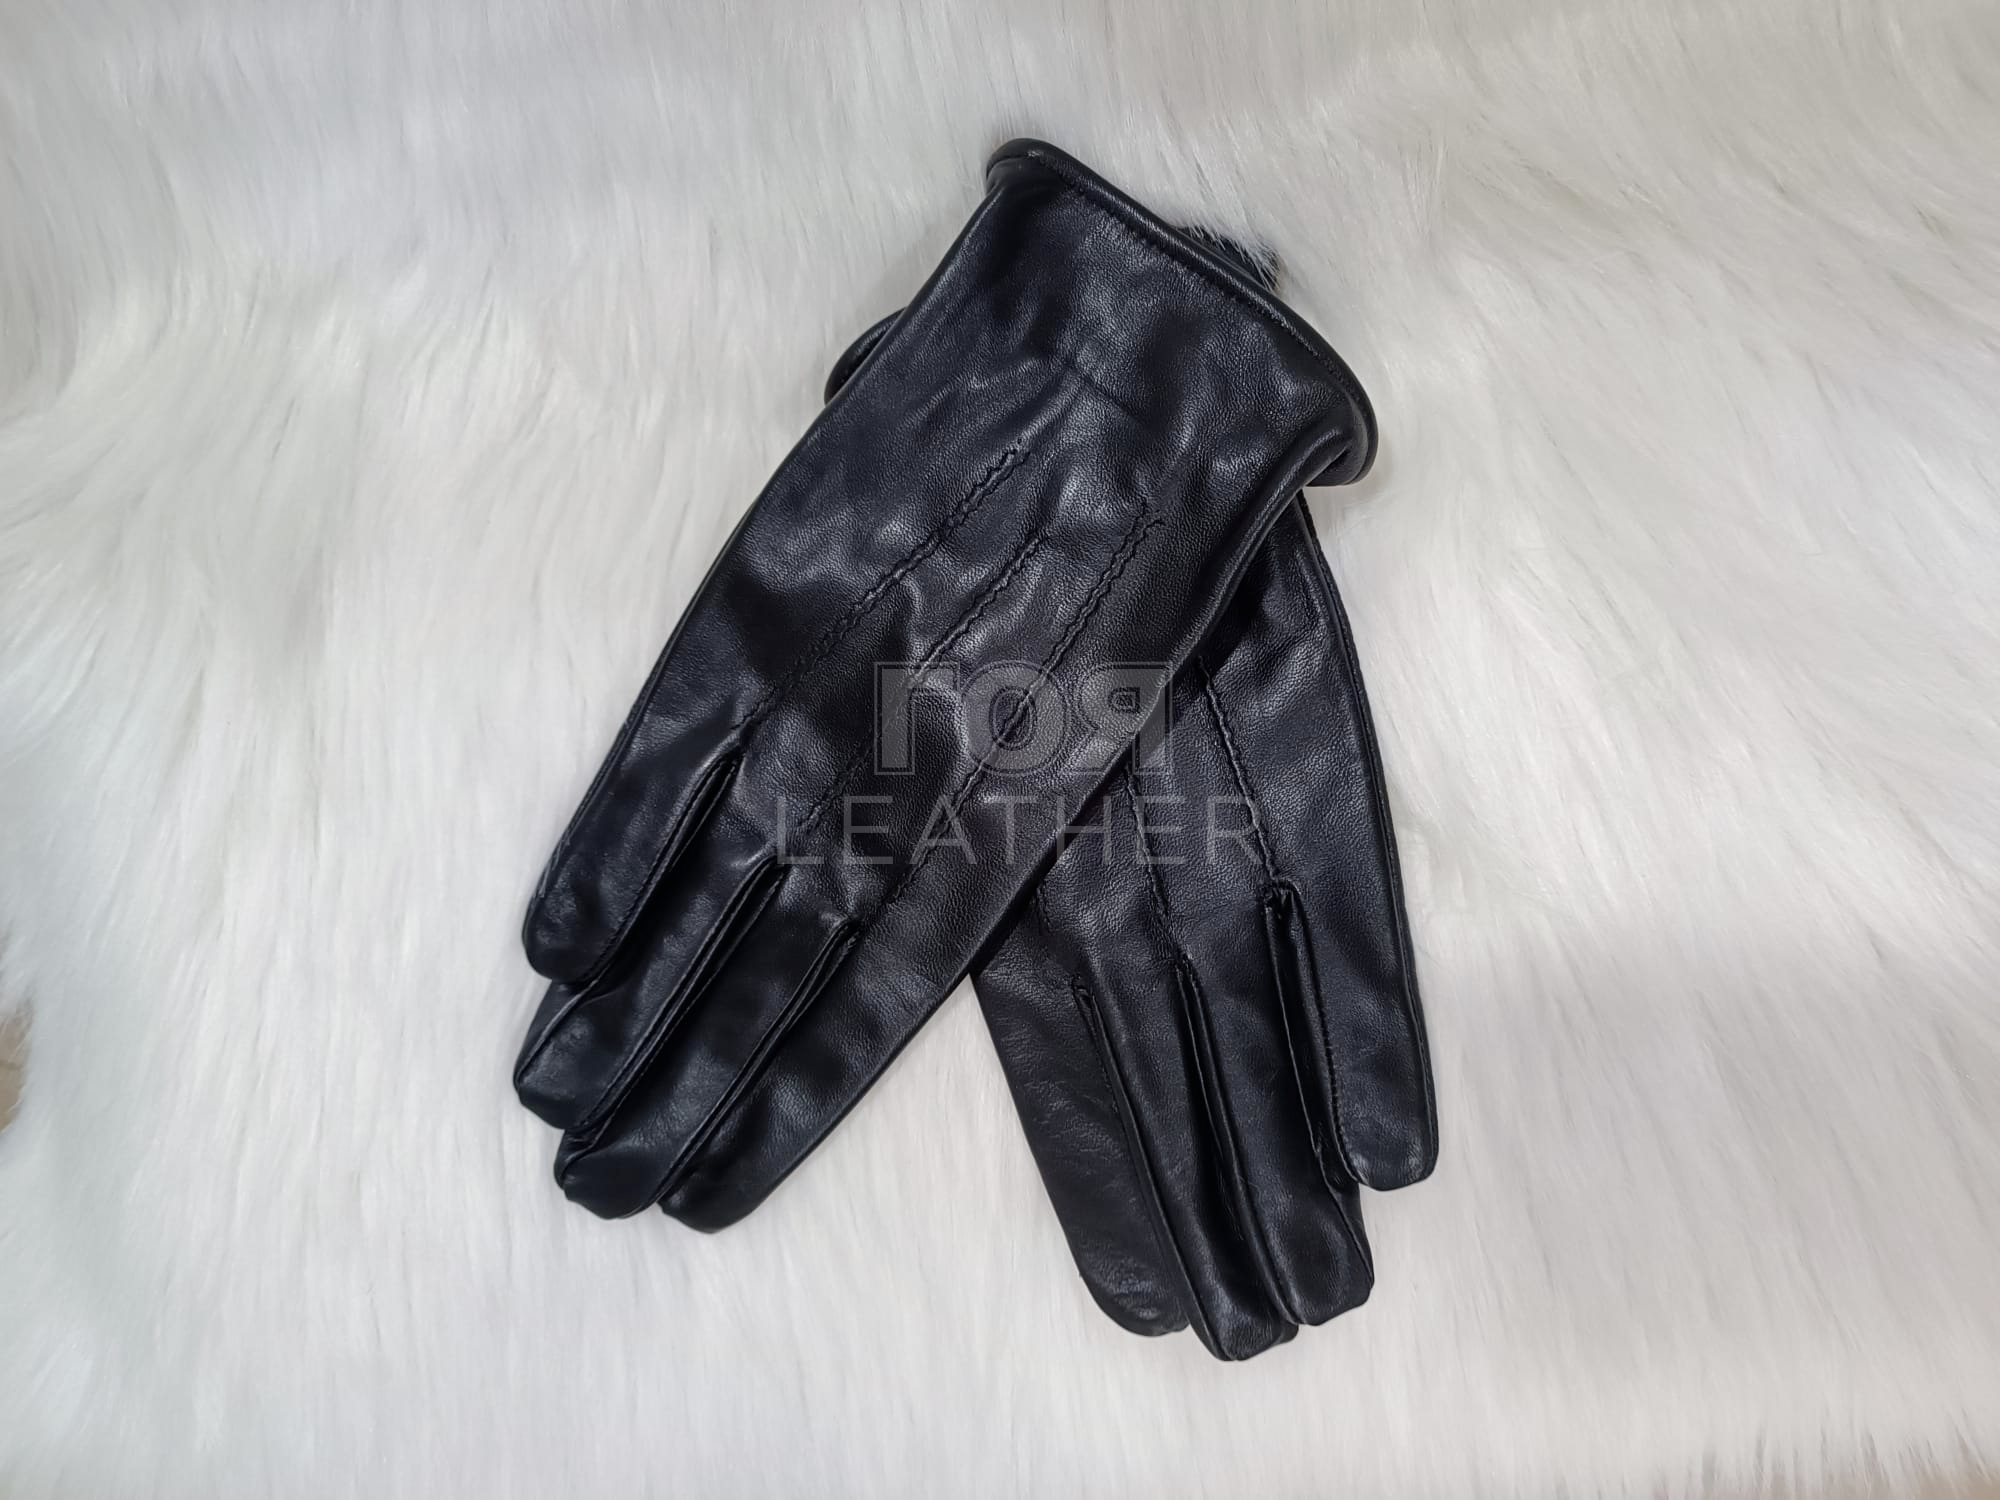 Мъжки кожени ръкавици от ГОЯ Leather. Класически модел кожени ръкавици изработени от 100% естествена агнешка напа.